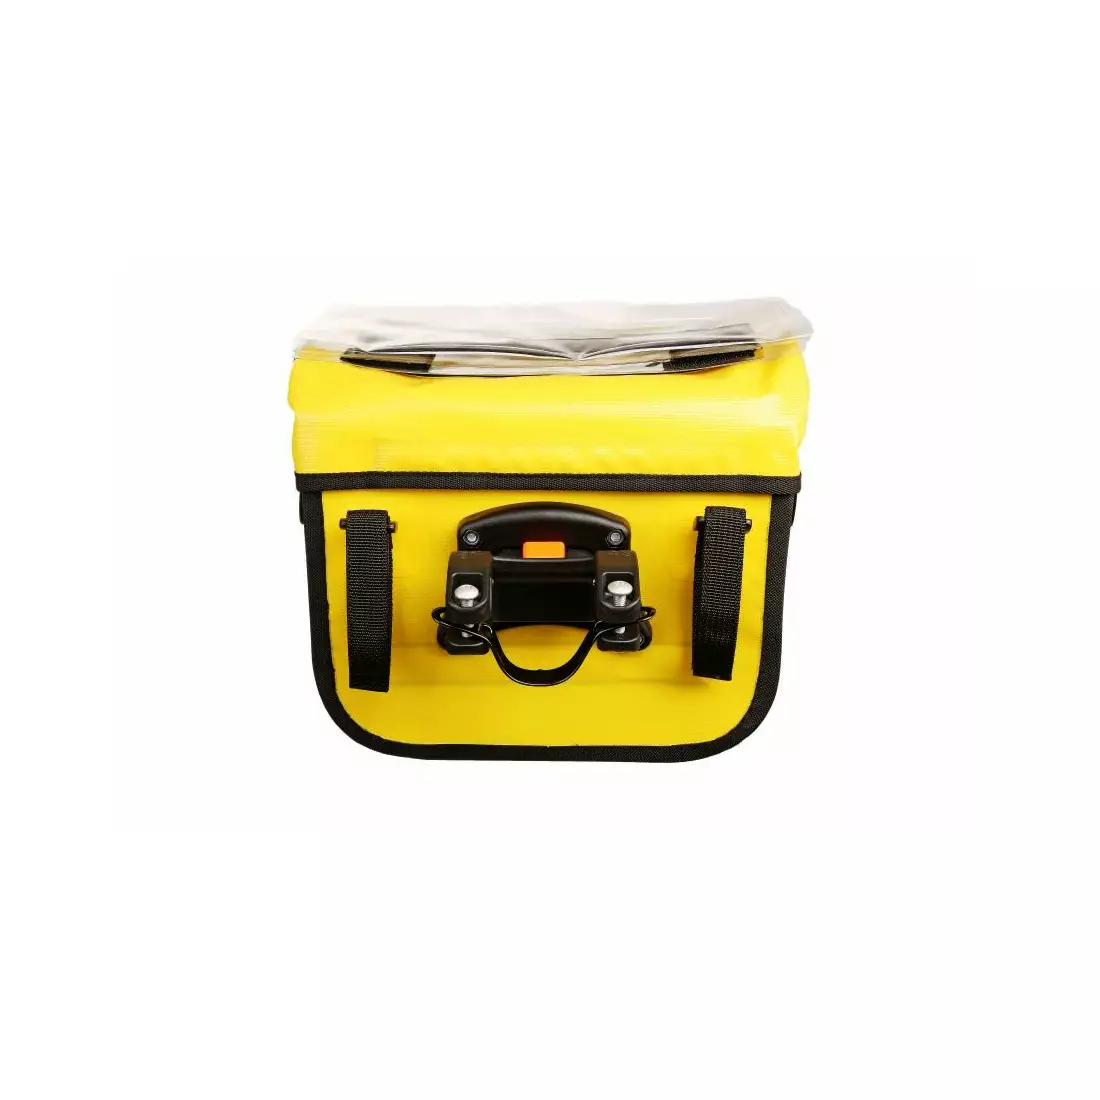 SPORT ARSENAL 310 EXPEDICE Geantă pentru ghidon klick-fix, impermeabilă, galbenă